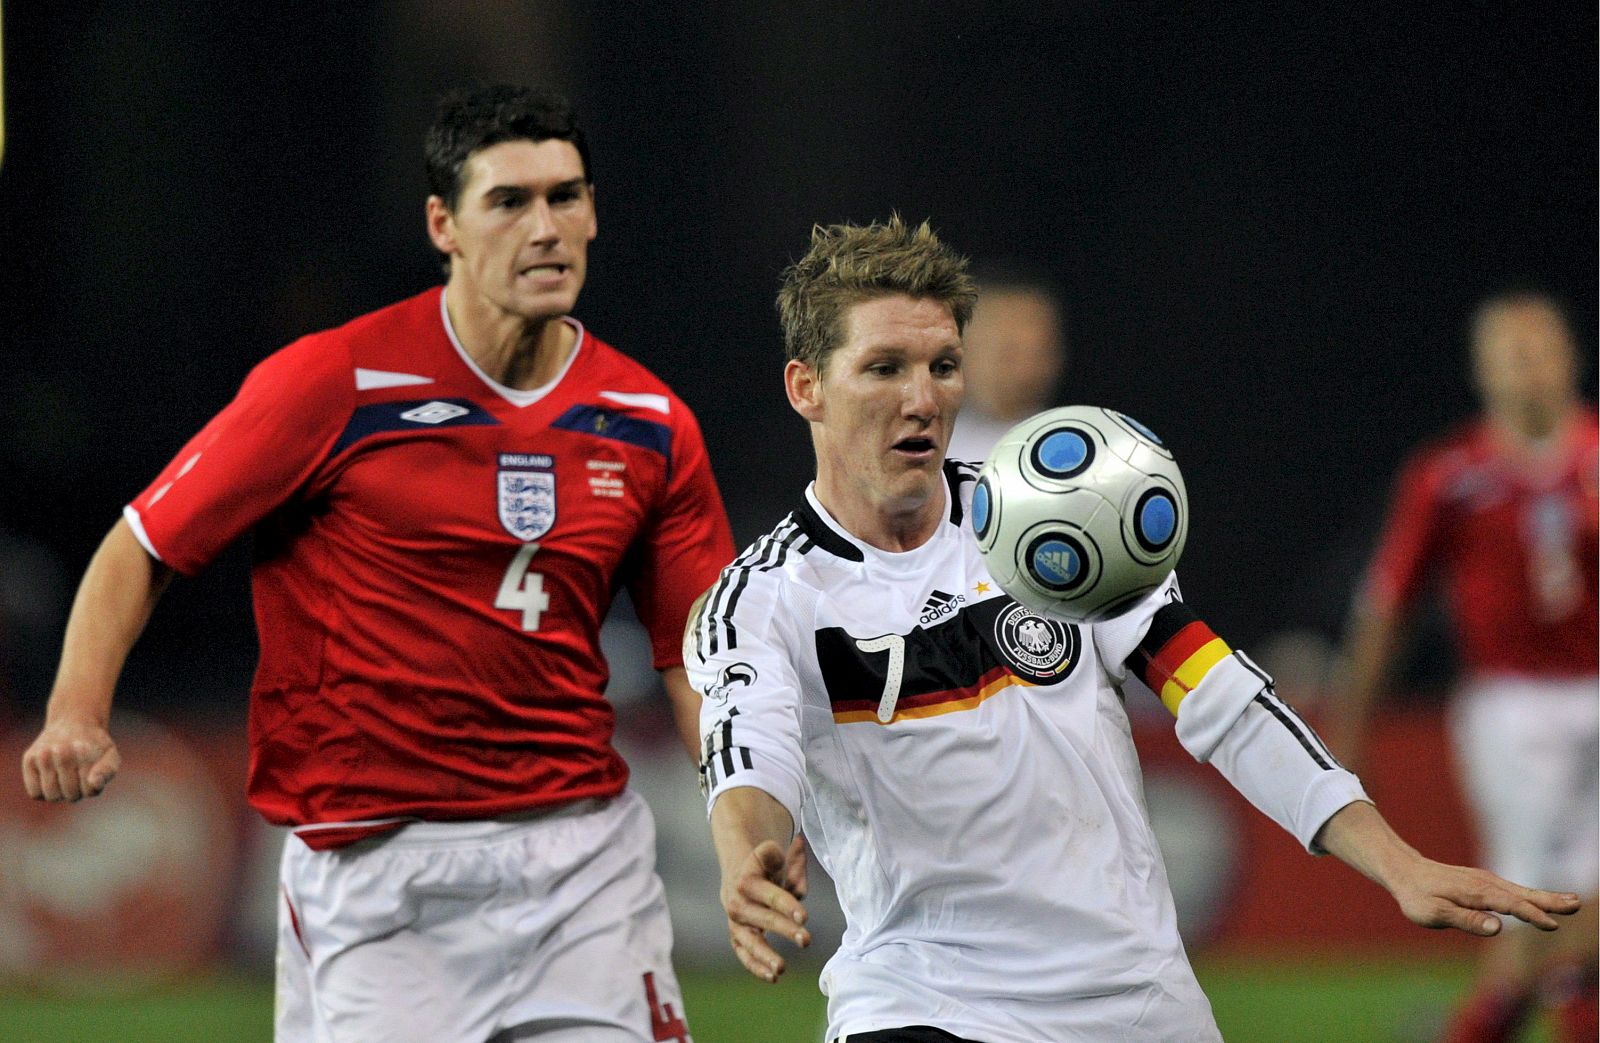 El jugador de Alemania, Bastian Schweinsteiger, disputa el balón con el inglés Gareth Barry durante el partido amistoso que se llevó a cabo el pasado 19 de noviembre en Berlín.